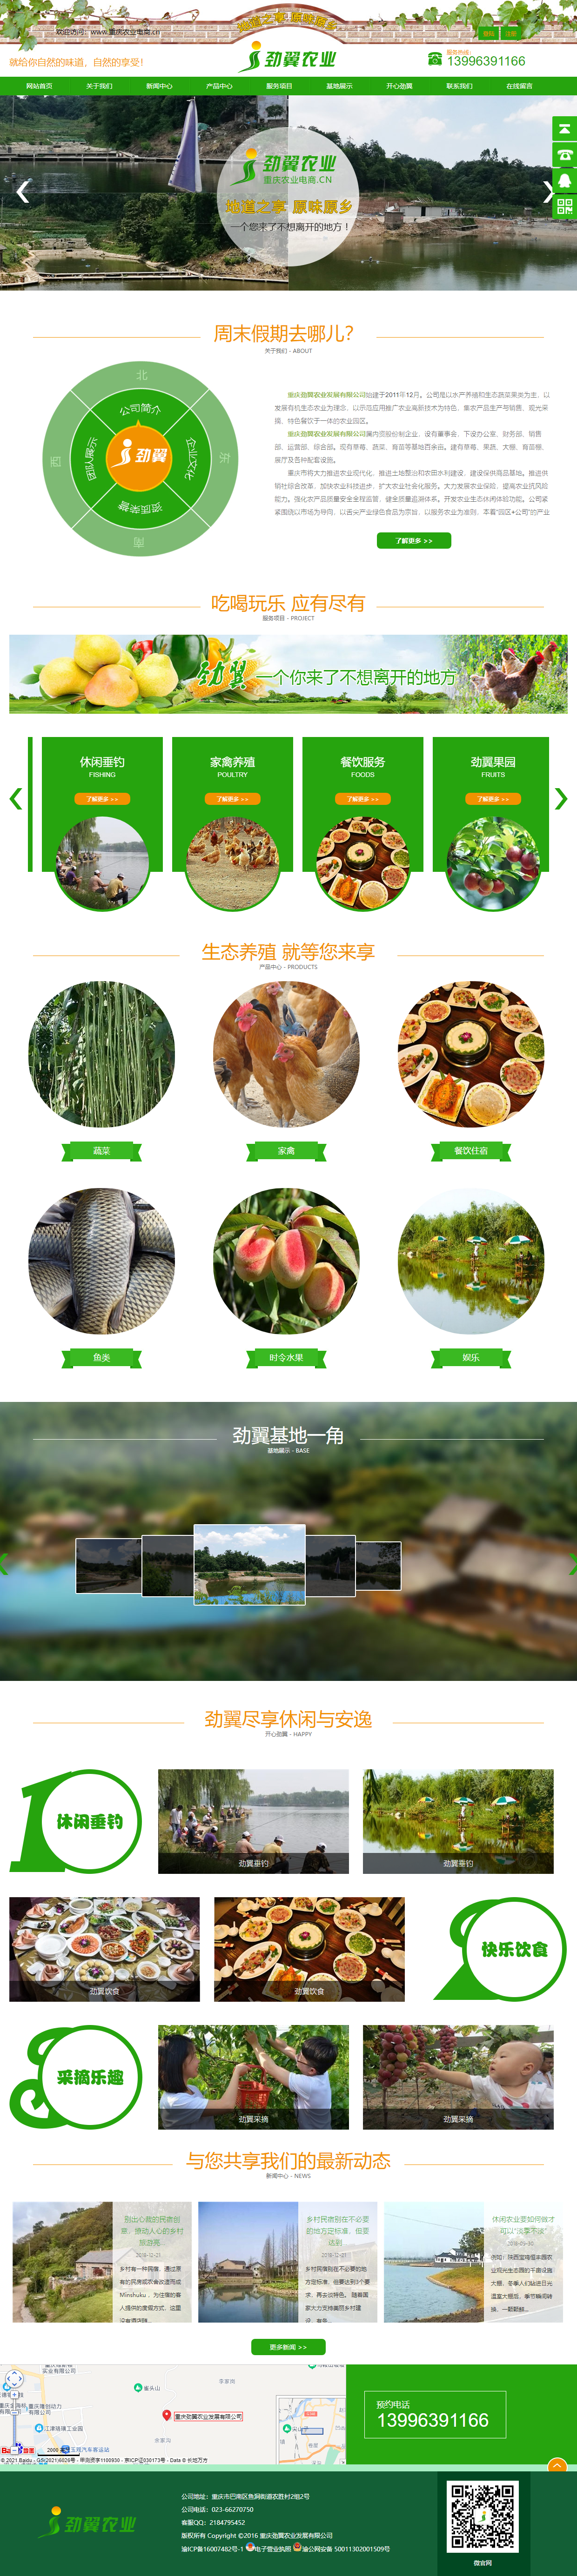 重庆劲翼农业发展有限公司网站案例